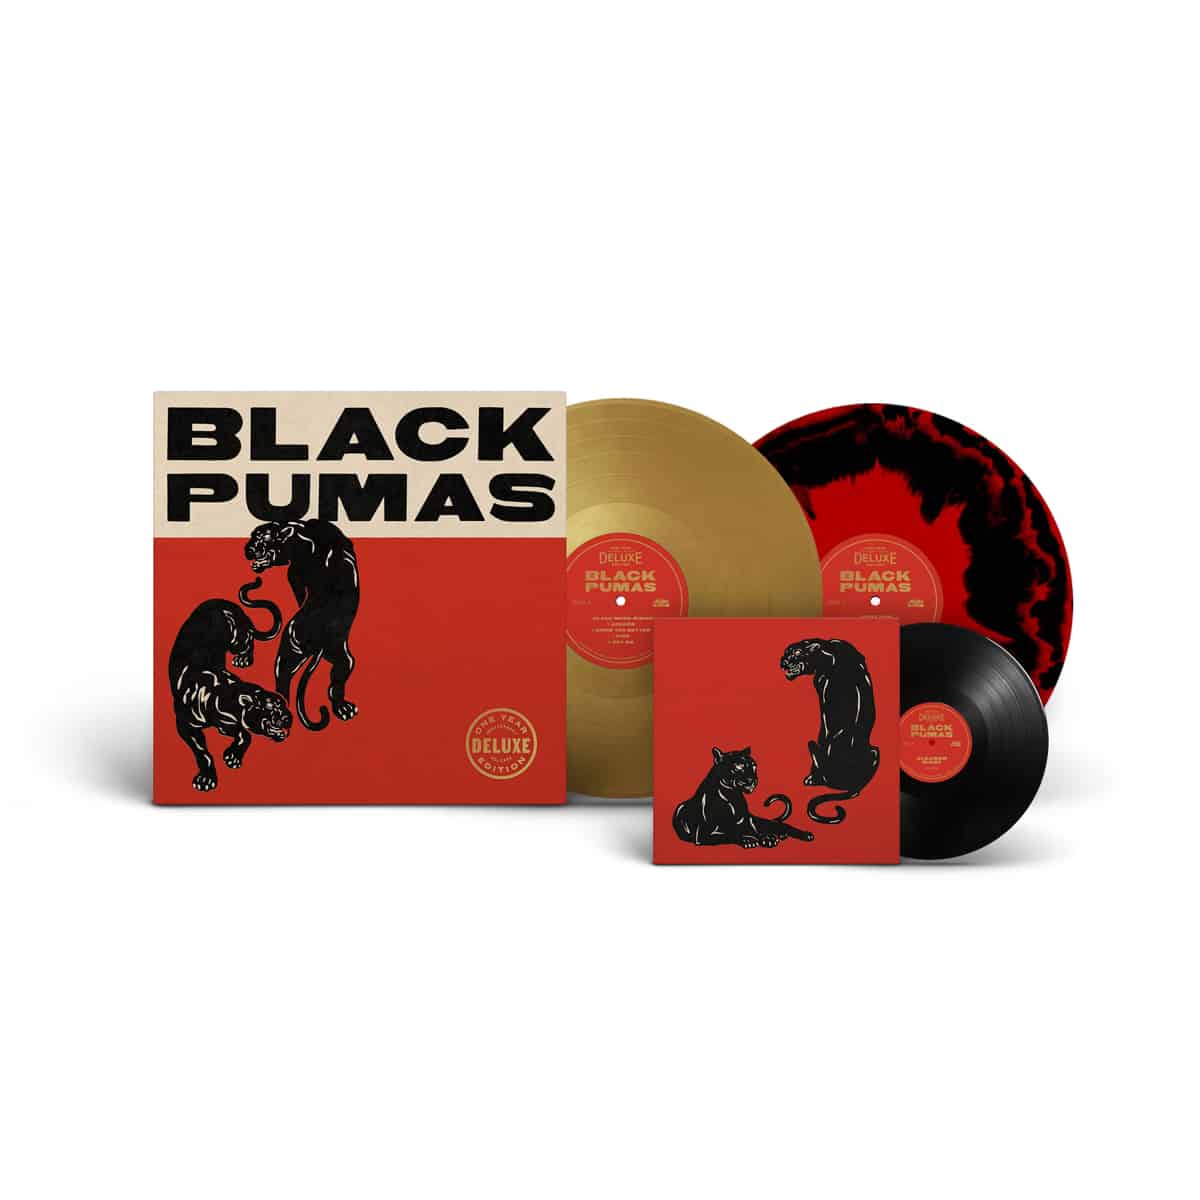 Black Pumas "Black Pumas" Deluxe LP